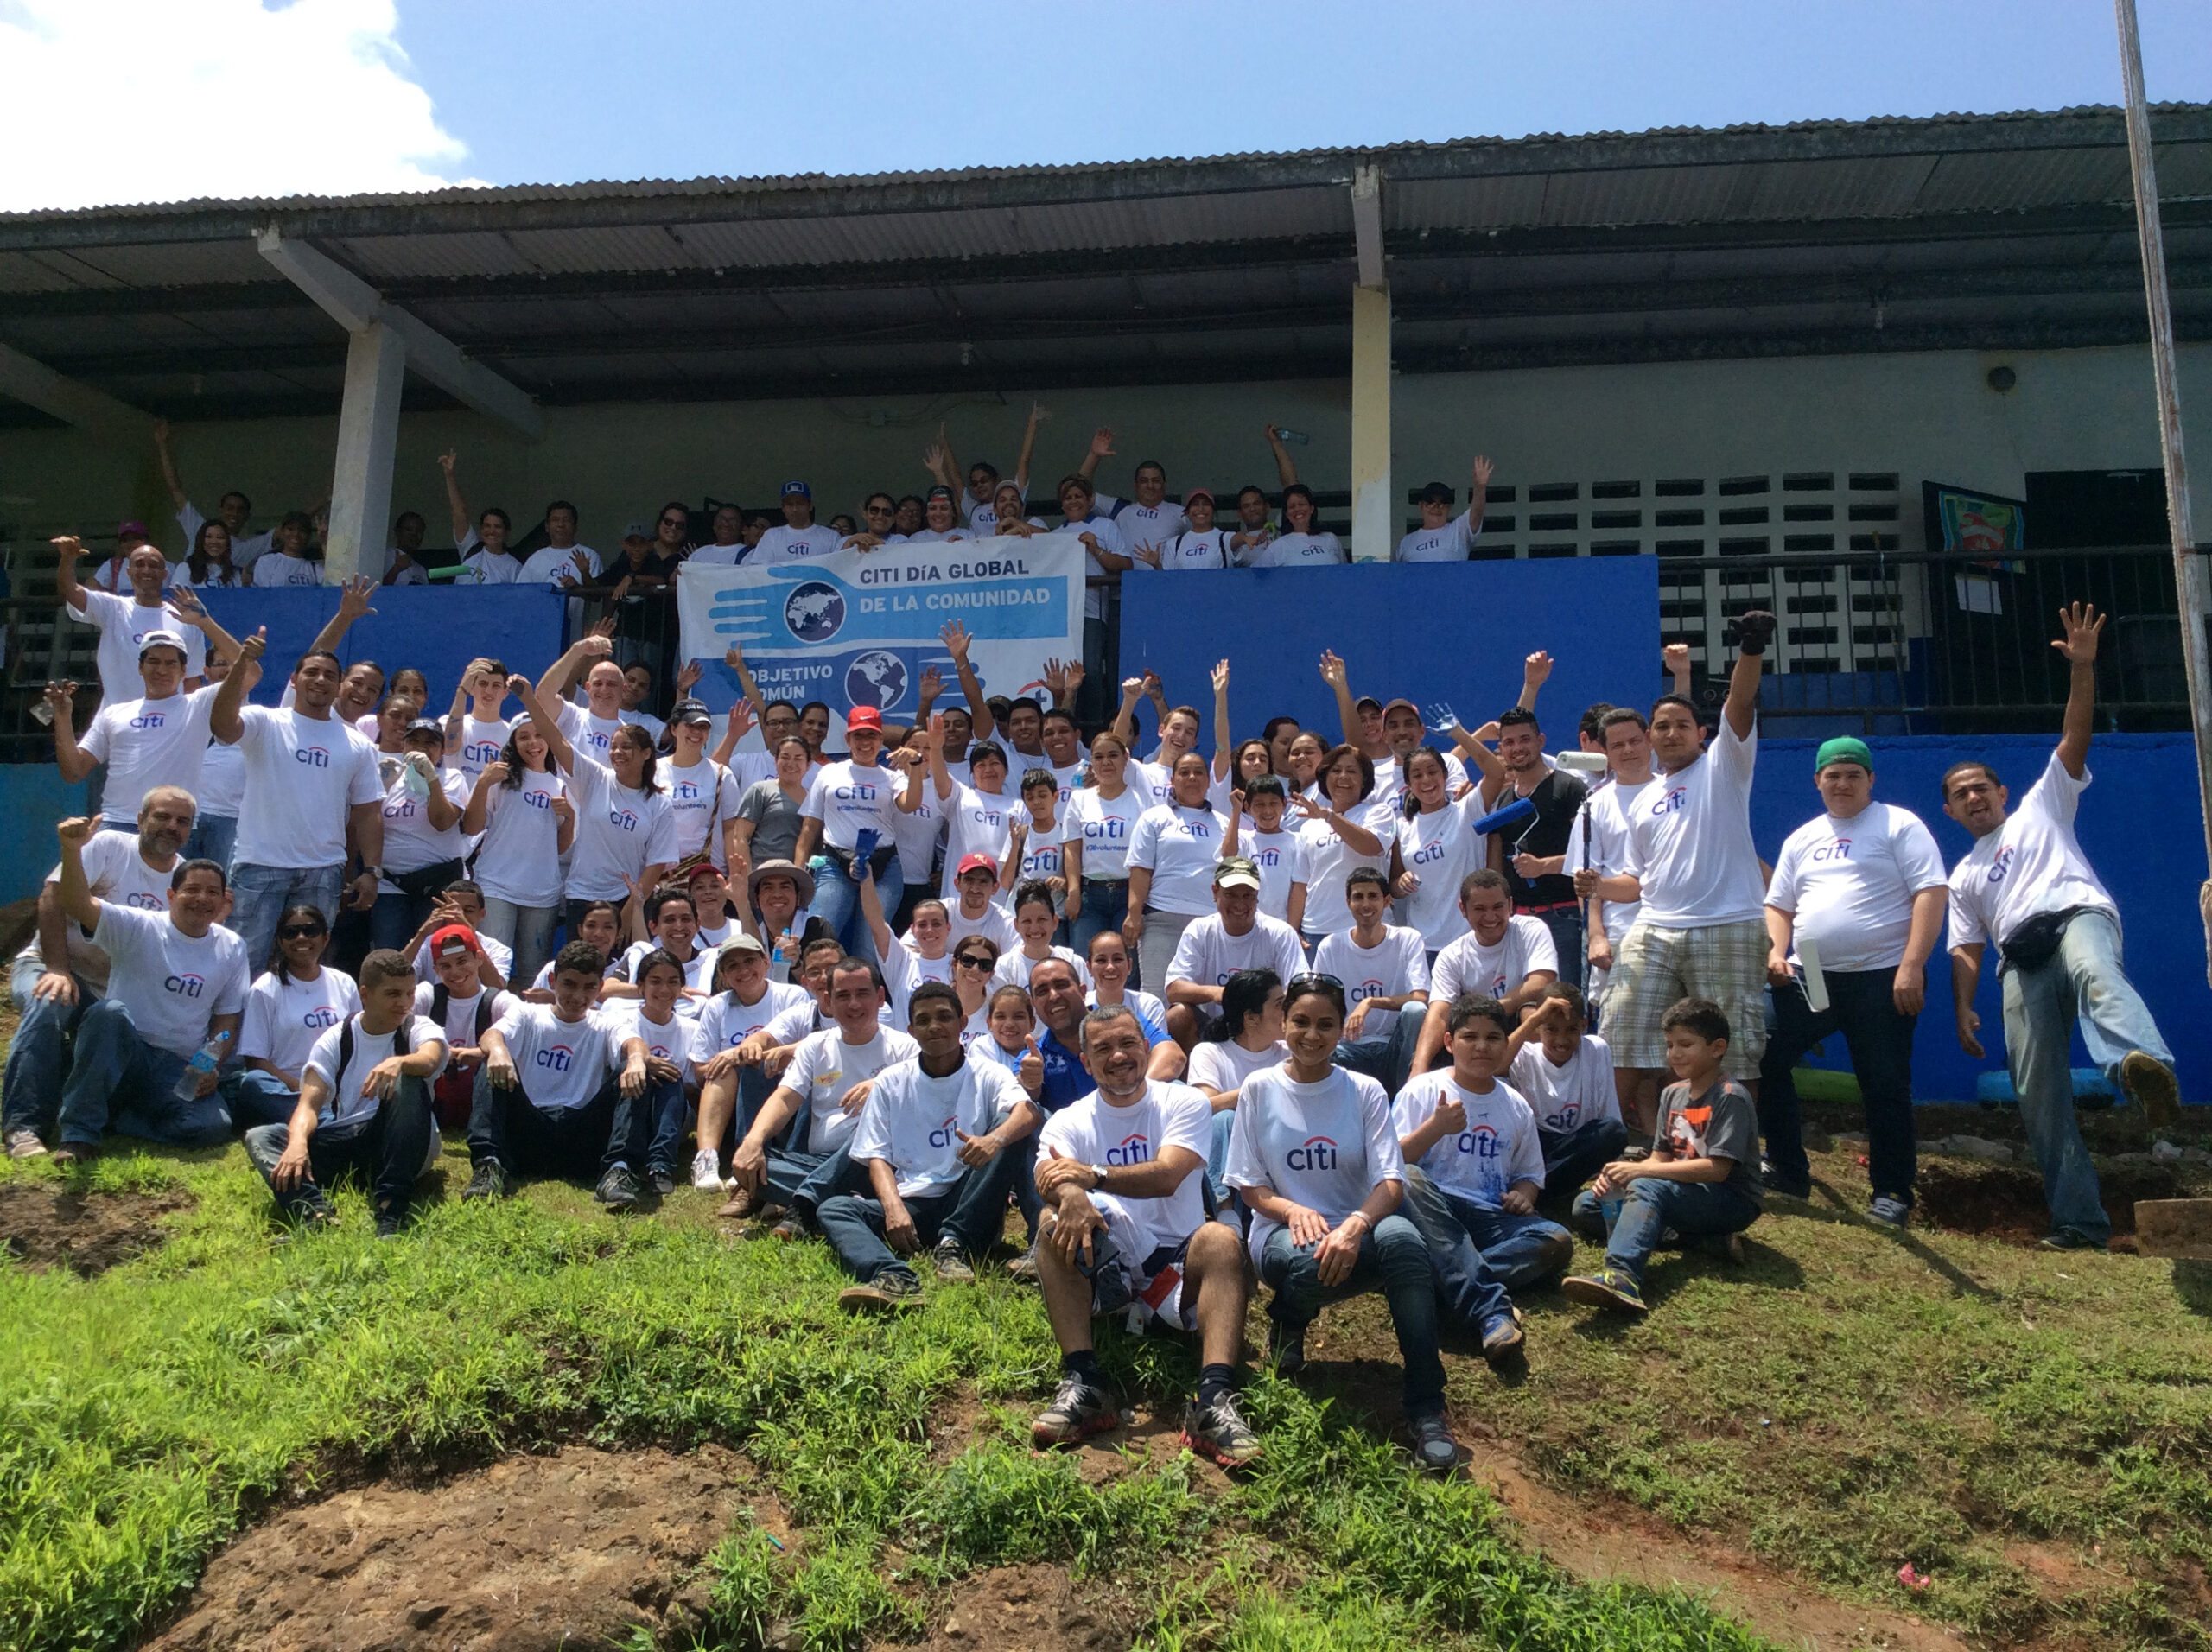 Voluntarios de Citi en Panamá celebraron el Día Global de la Comunidad